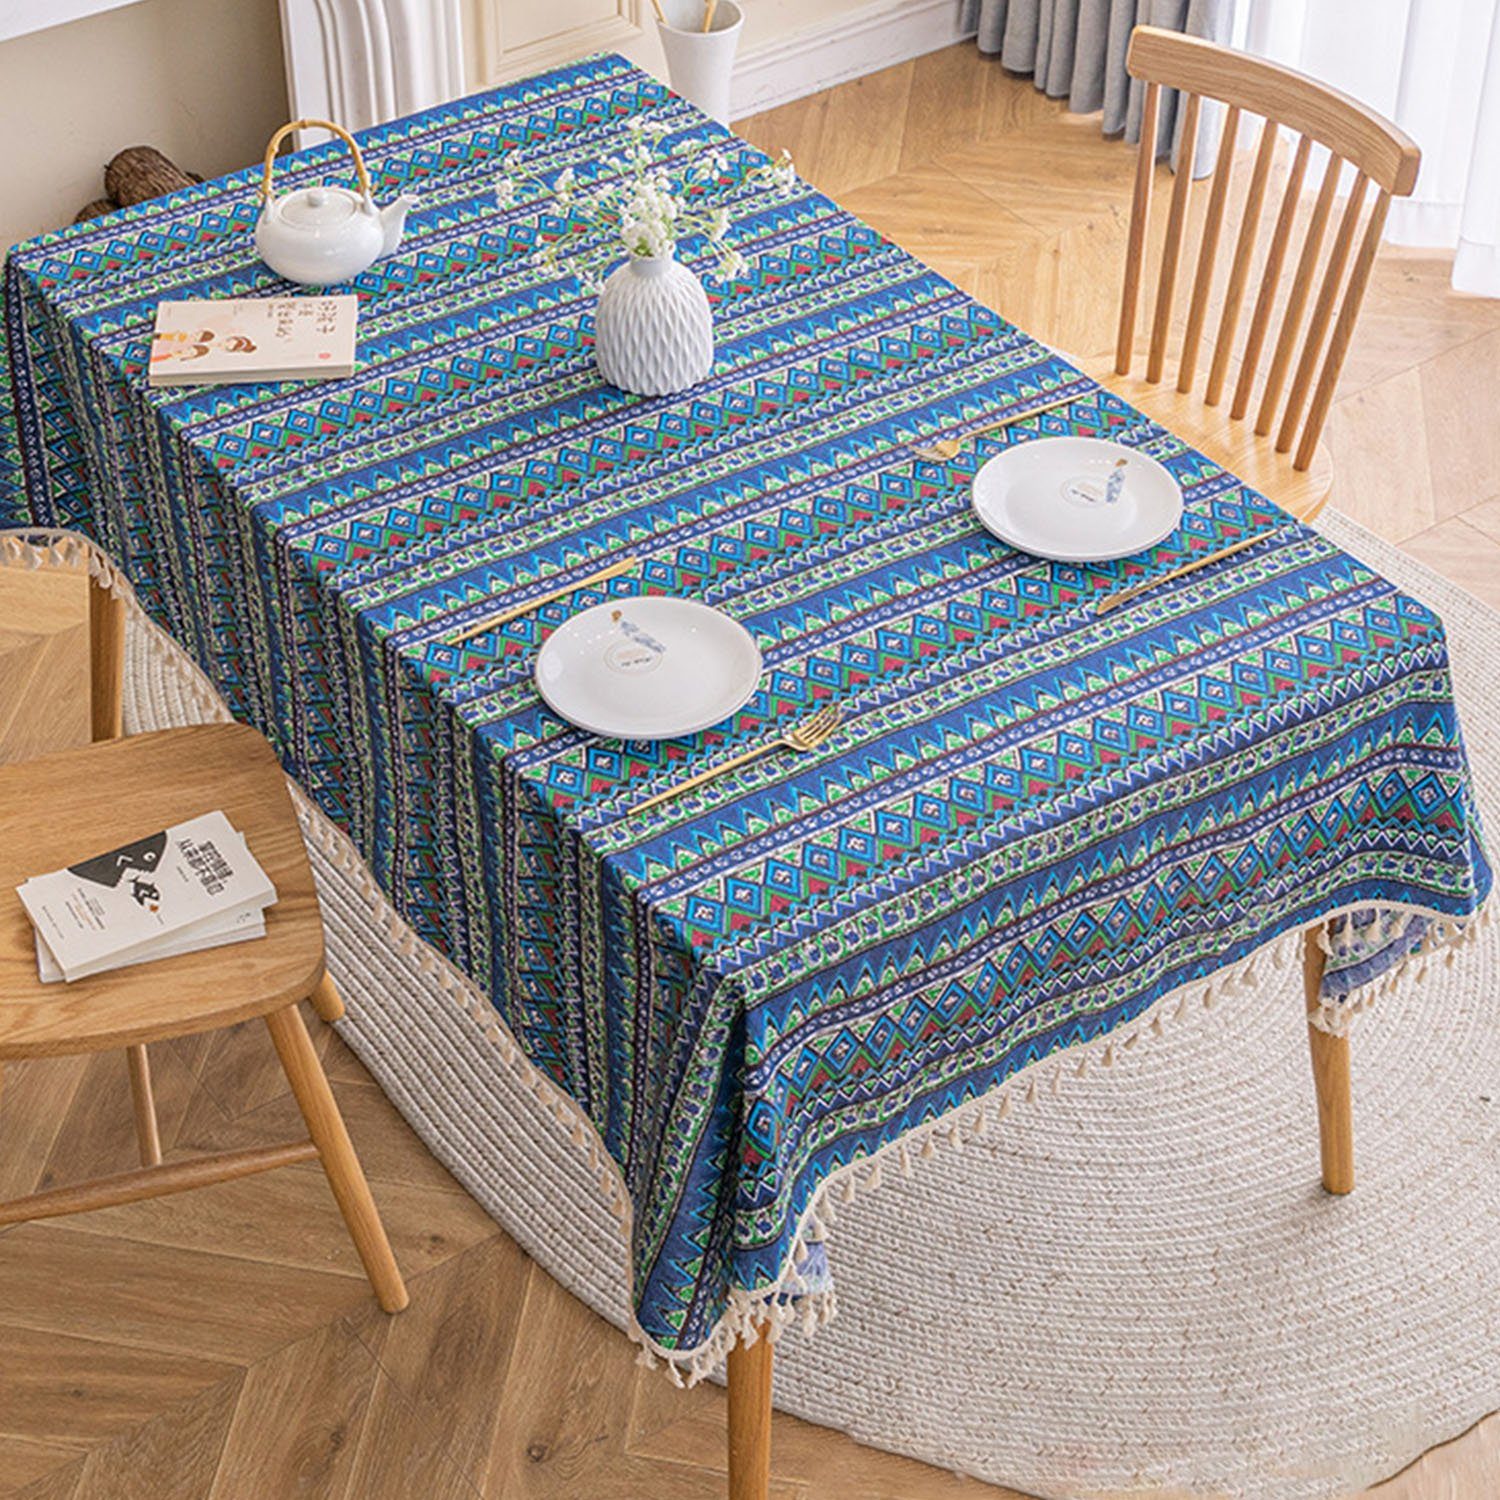 Baumwollleinen Tischdecke Blaue aus MAGICSHE Böhmische Quaste Tischdecke mit Welle-Quaste